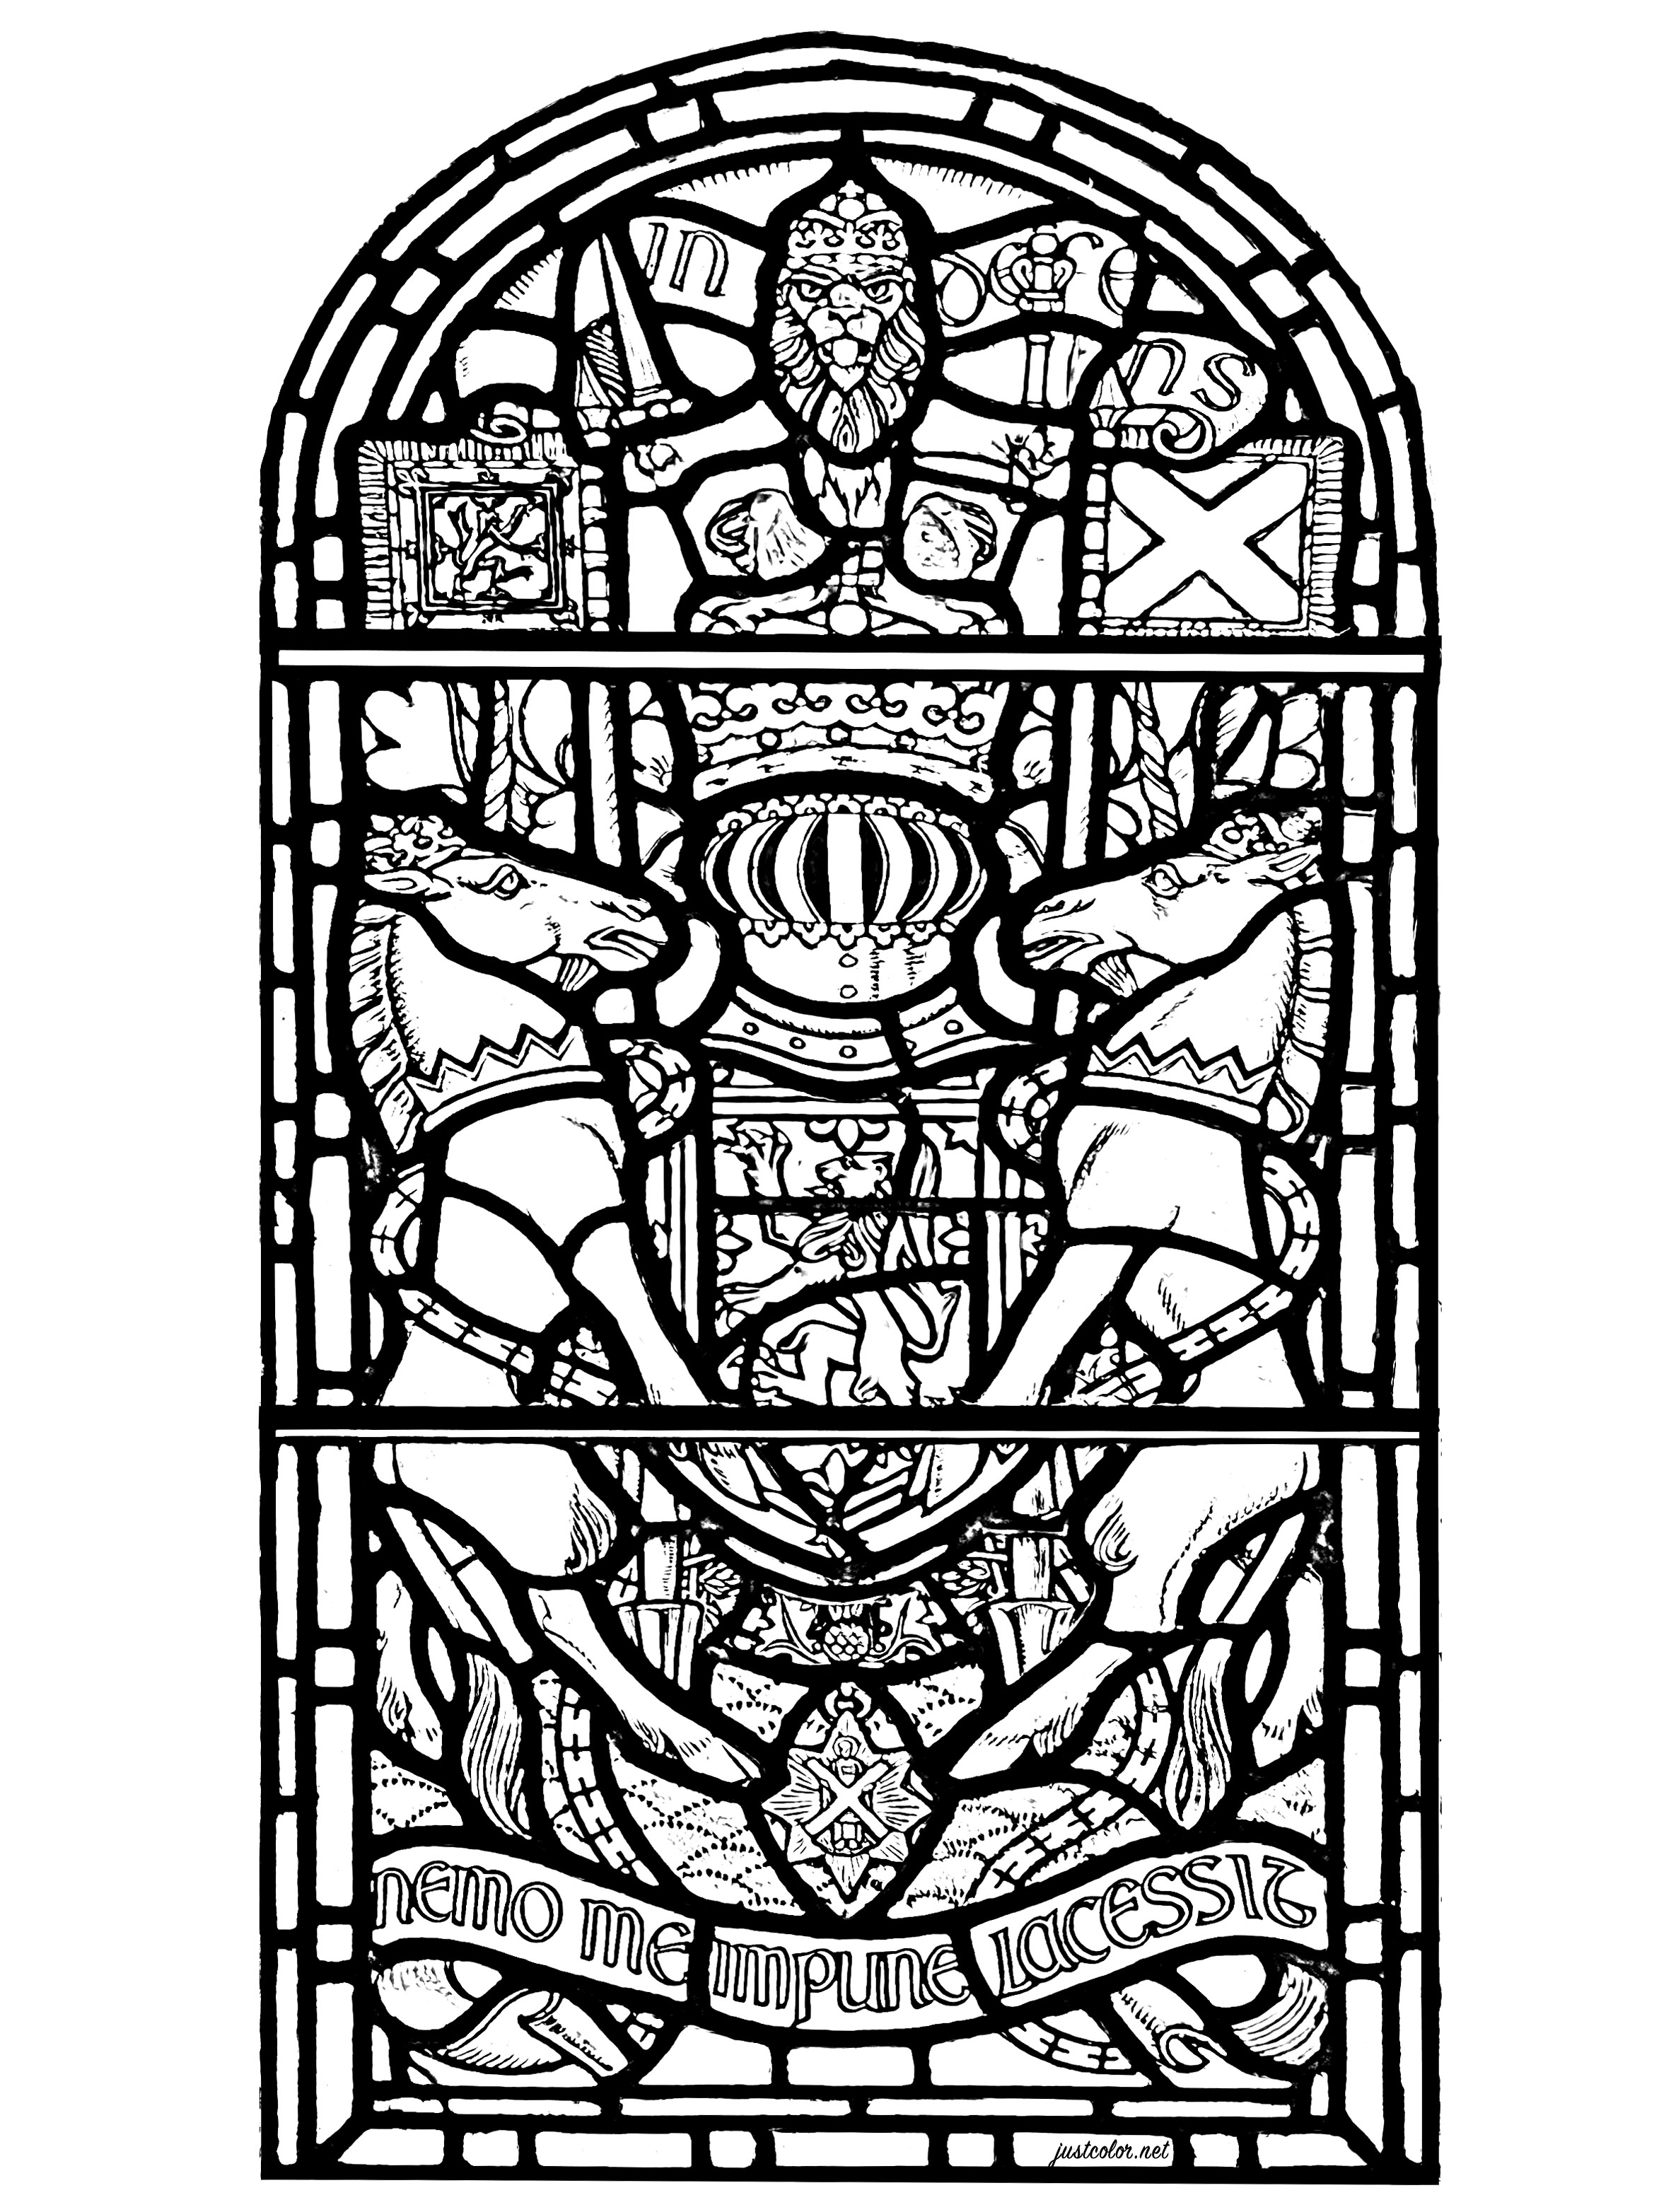 Vetrata del castello di Edimburgo, Scozia. La vetrata raffigura vari simboli della Scozia e il testo 'Nemo me impune lacessit', che è il motto latino dell'Ordine del Cardo.Esso compare sulle armi reali del Regno Unito di Scozia.Significa 'Nessuno mi offende impunemente'.